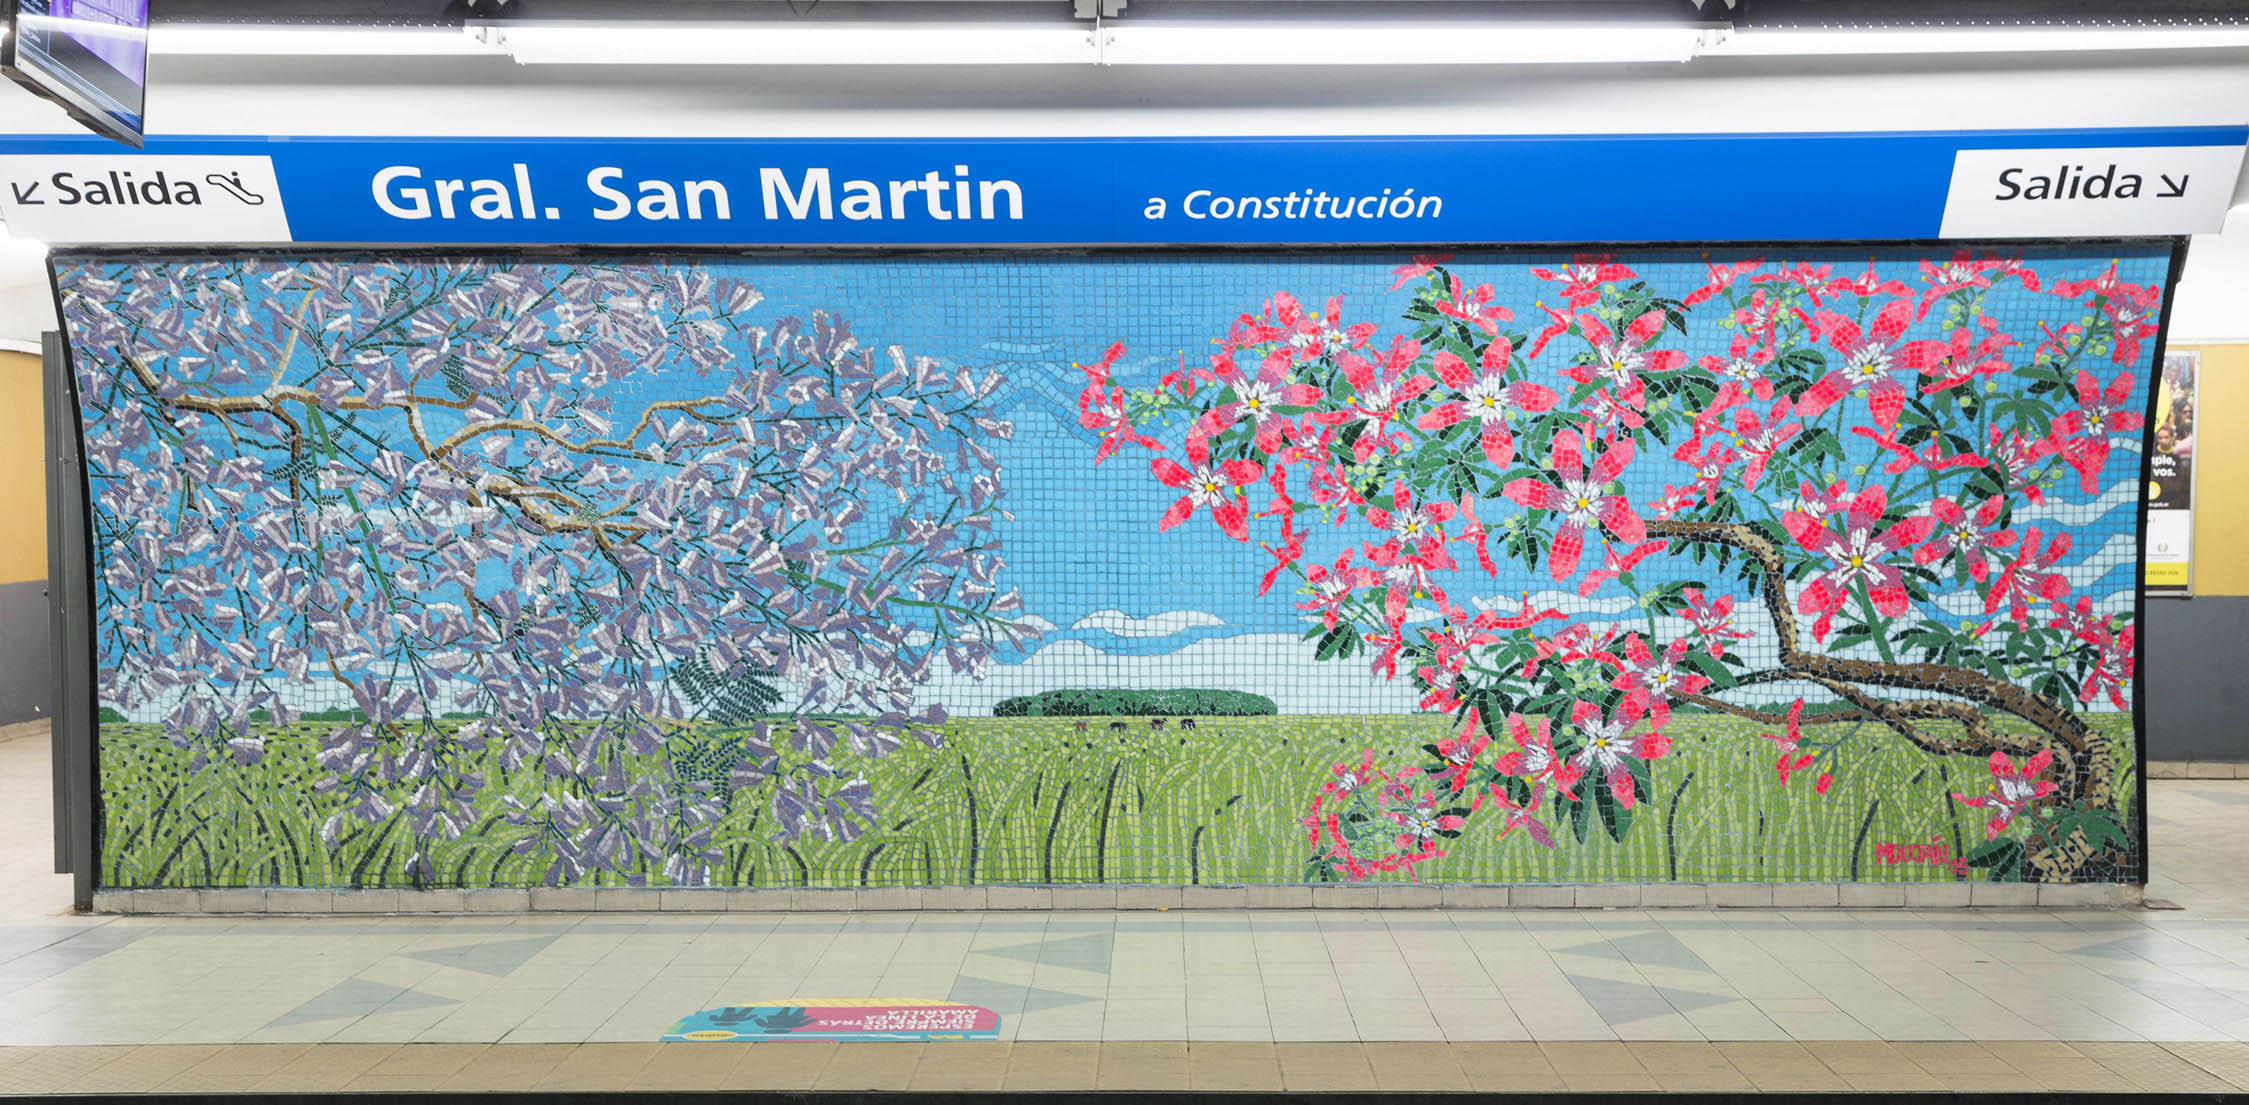 Motivos de la flora autóctona decoran la estación San Martín de la Línea C